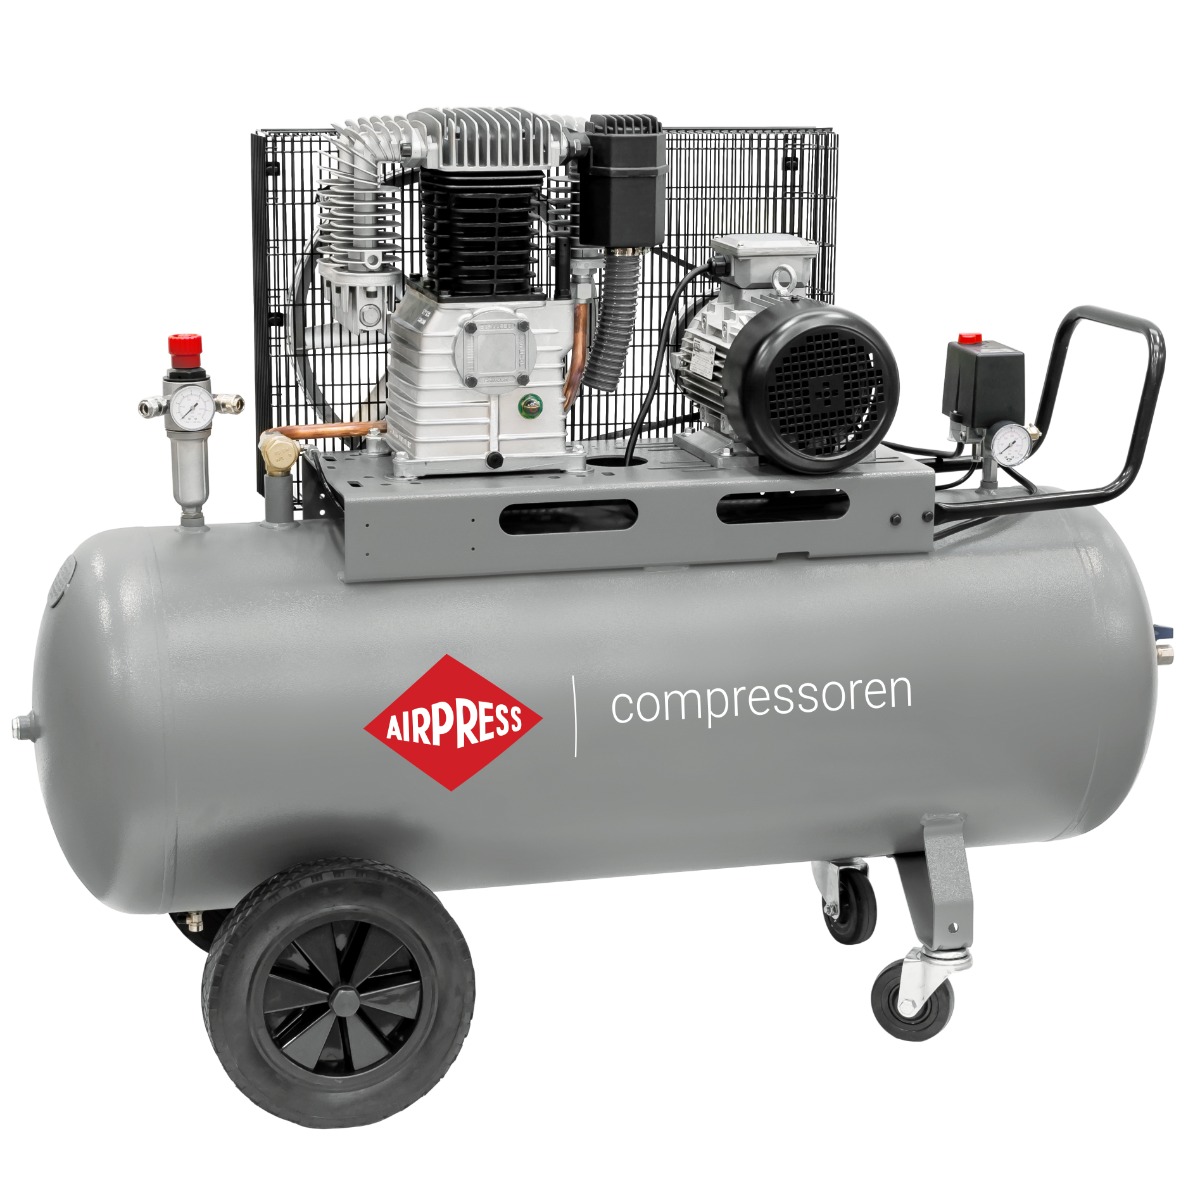 HK 650-200 Pro compressor